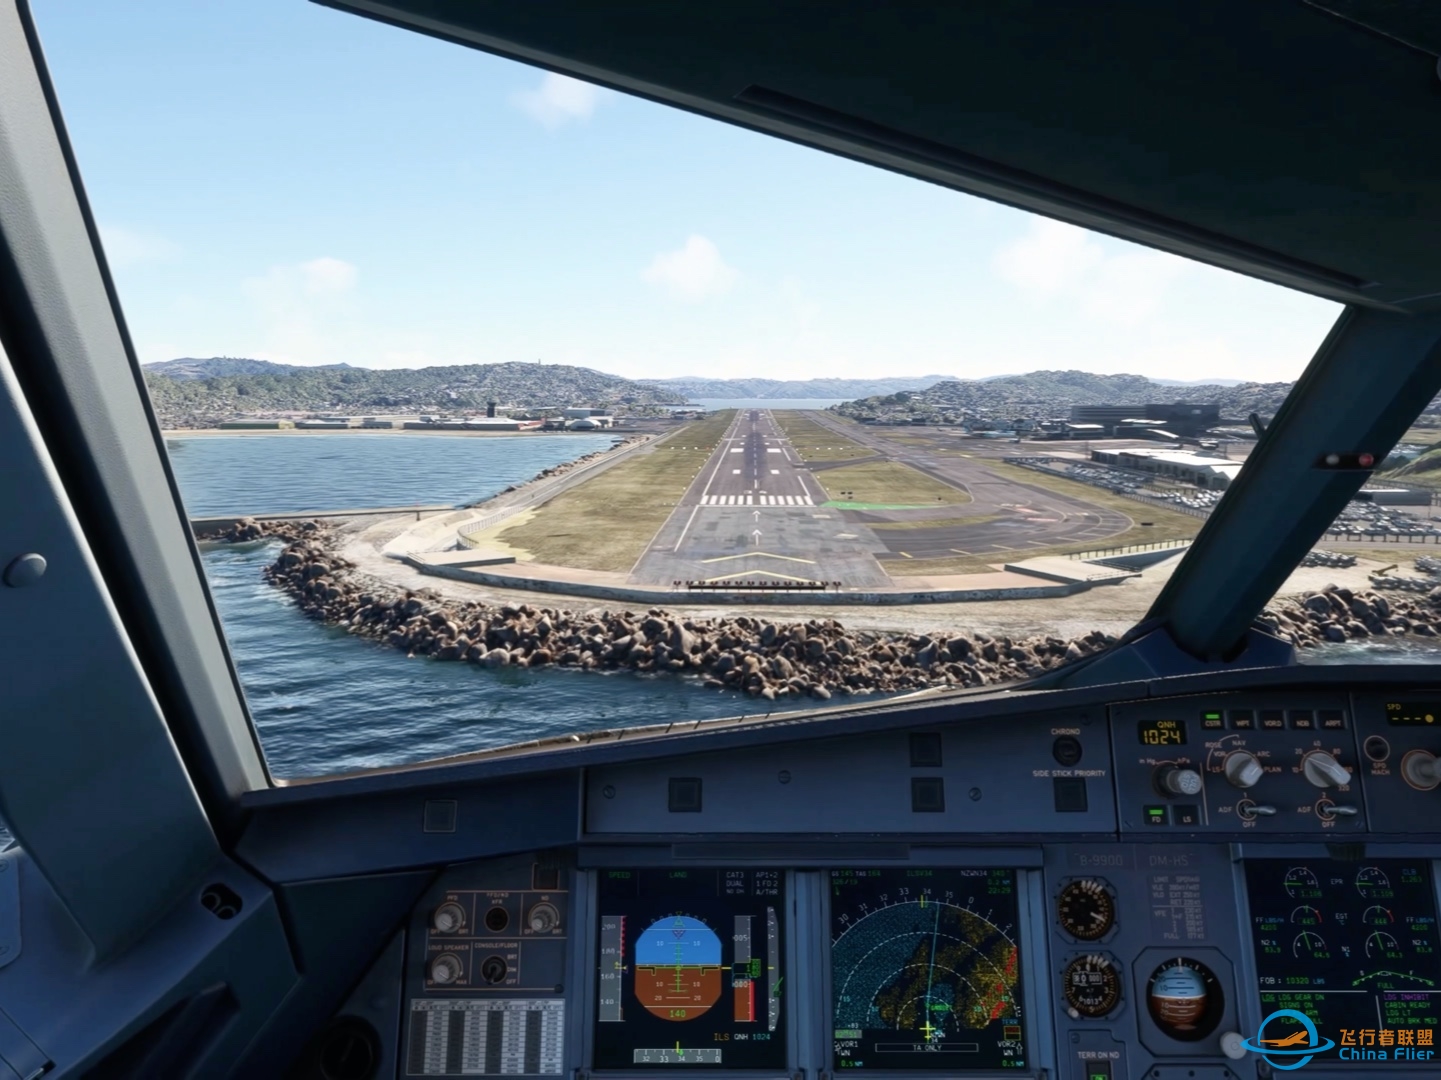 降落微软飞行模拟2020最喜欢的机场新西兰惠灵顿机场-2453 